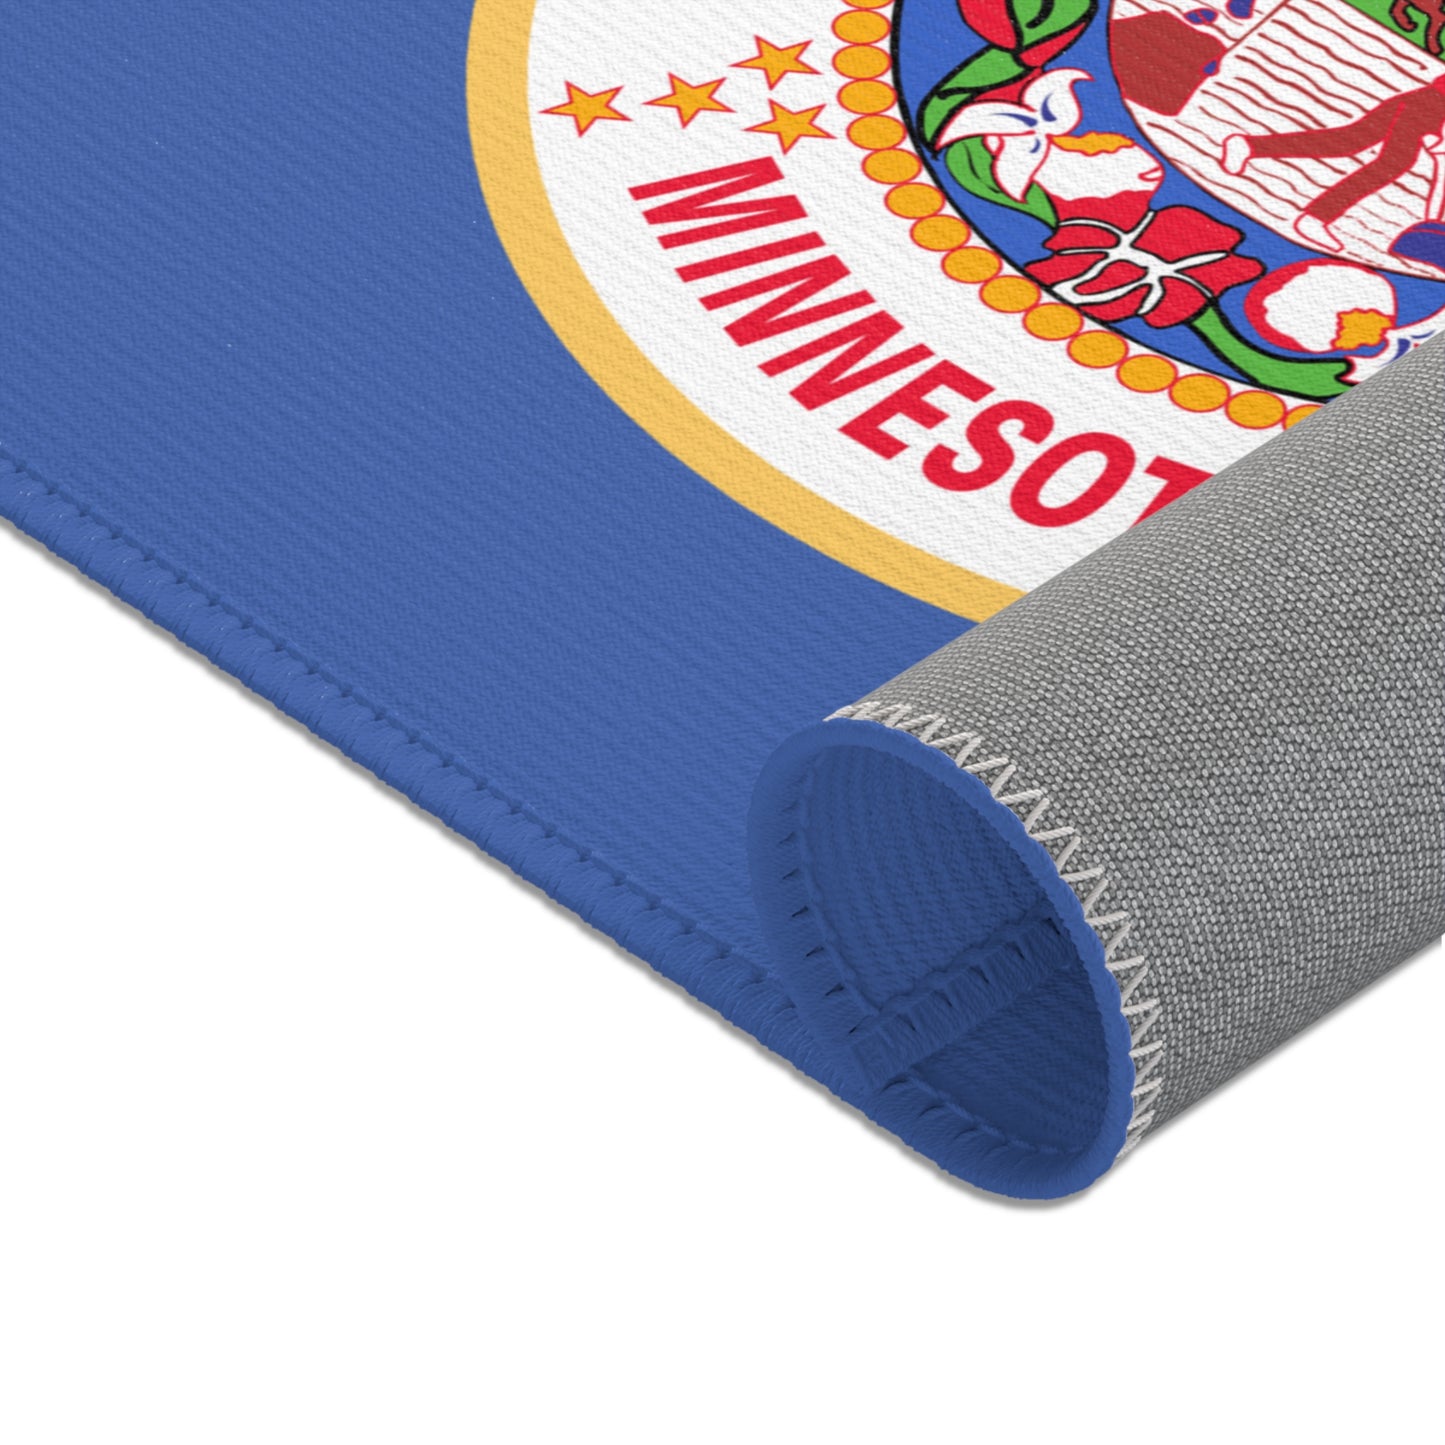 The ORIGINAL Minnesota State Flag large floor Area Rugs